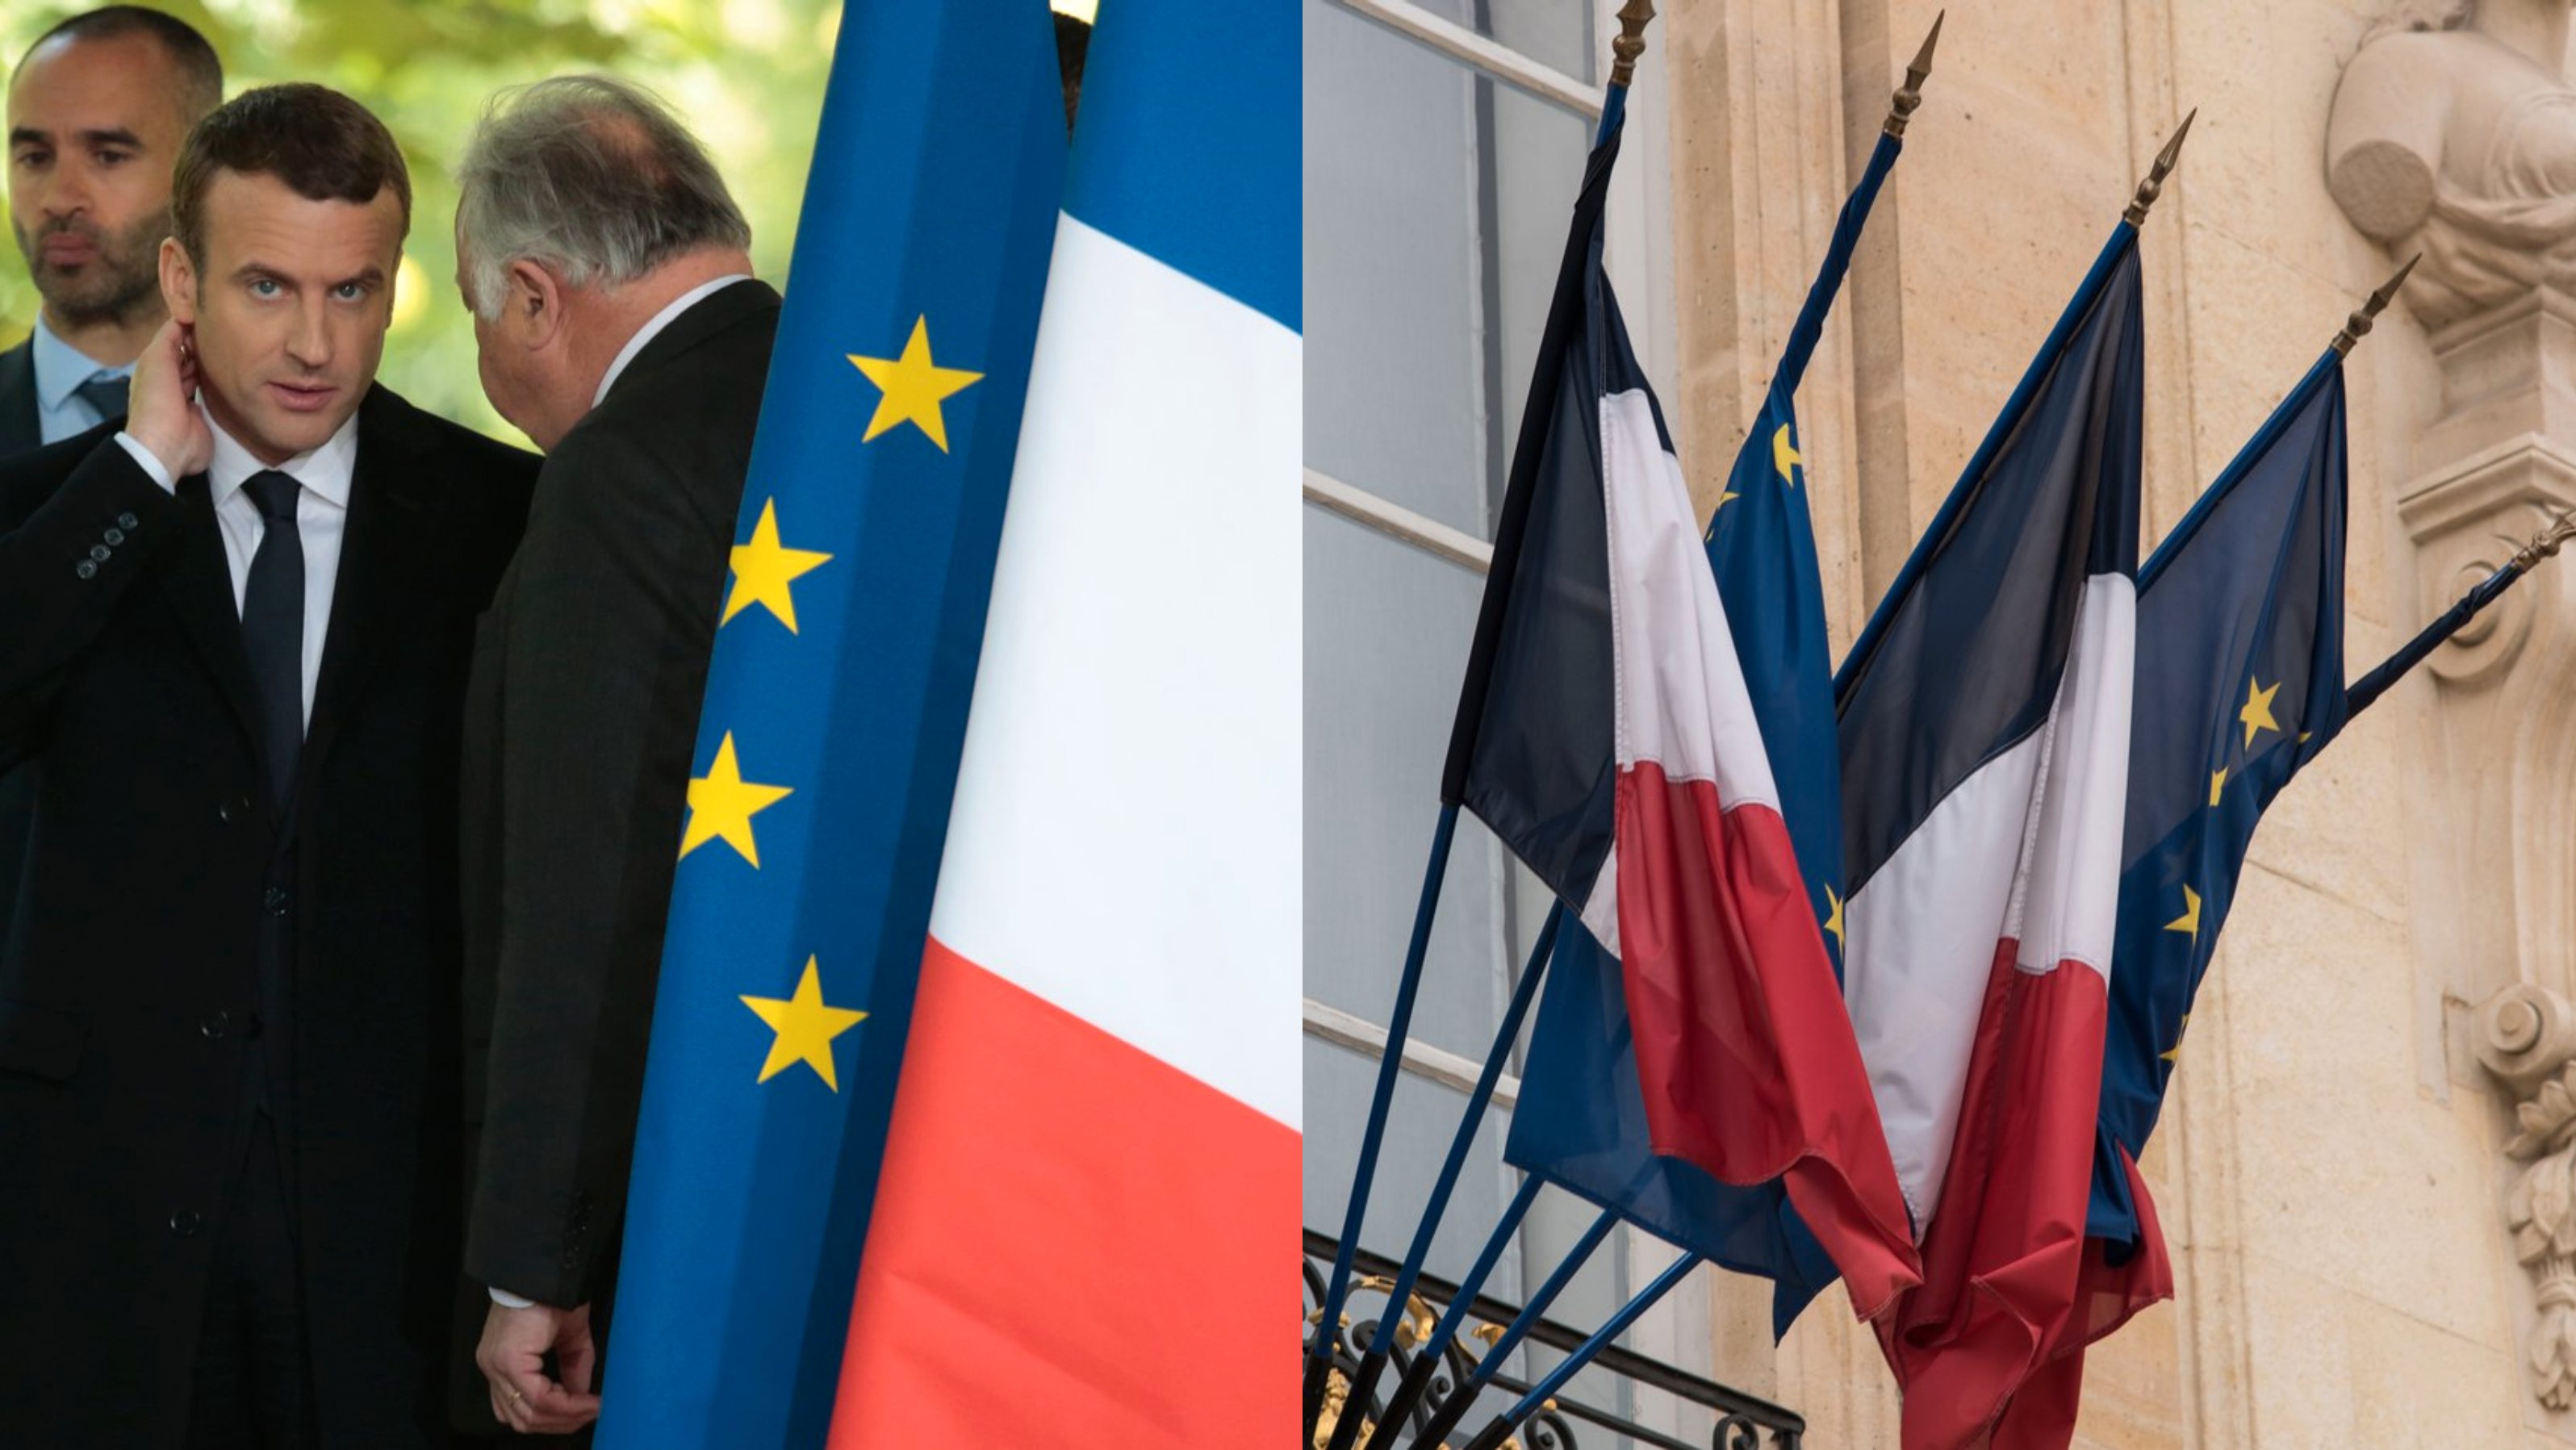 Polémica surge semanas antes de a França assumir a presidência do Conselho da União Europeia, em janeiro